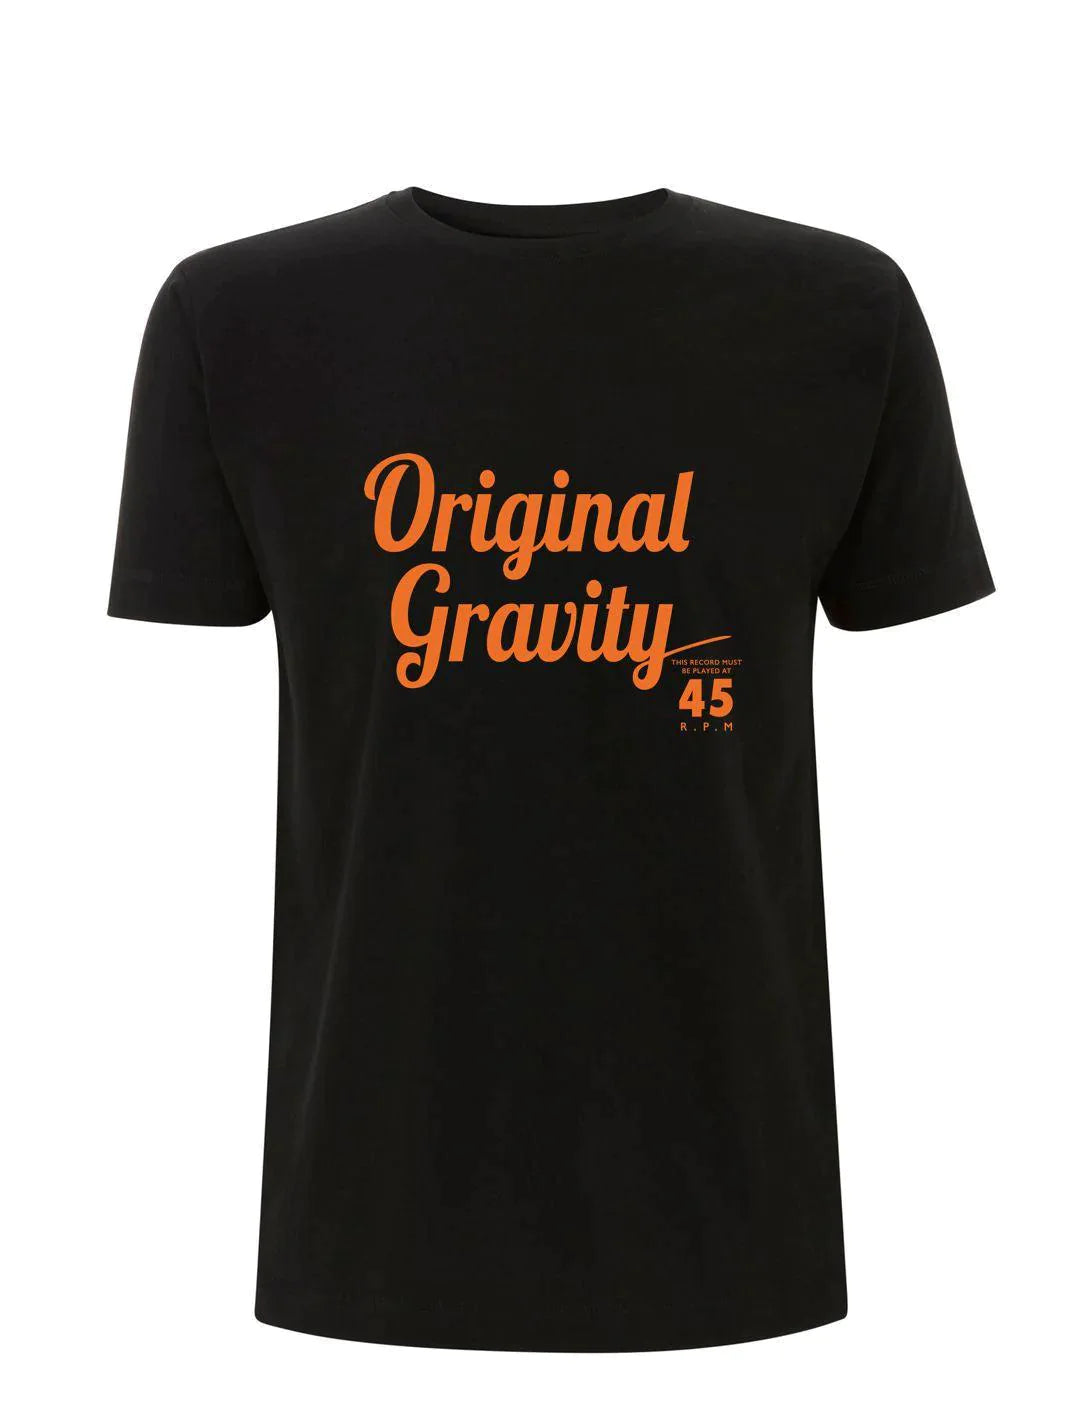 PLAYS at 45 RPM: Original Gravity Records T-Shirt (4 Colour Options) Official Merchandise - SOUND IS COLOUR